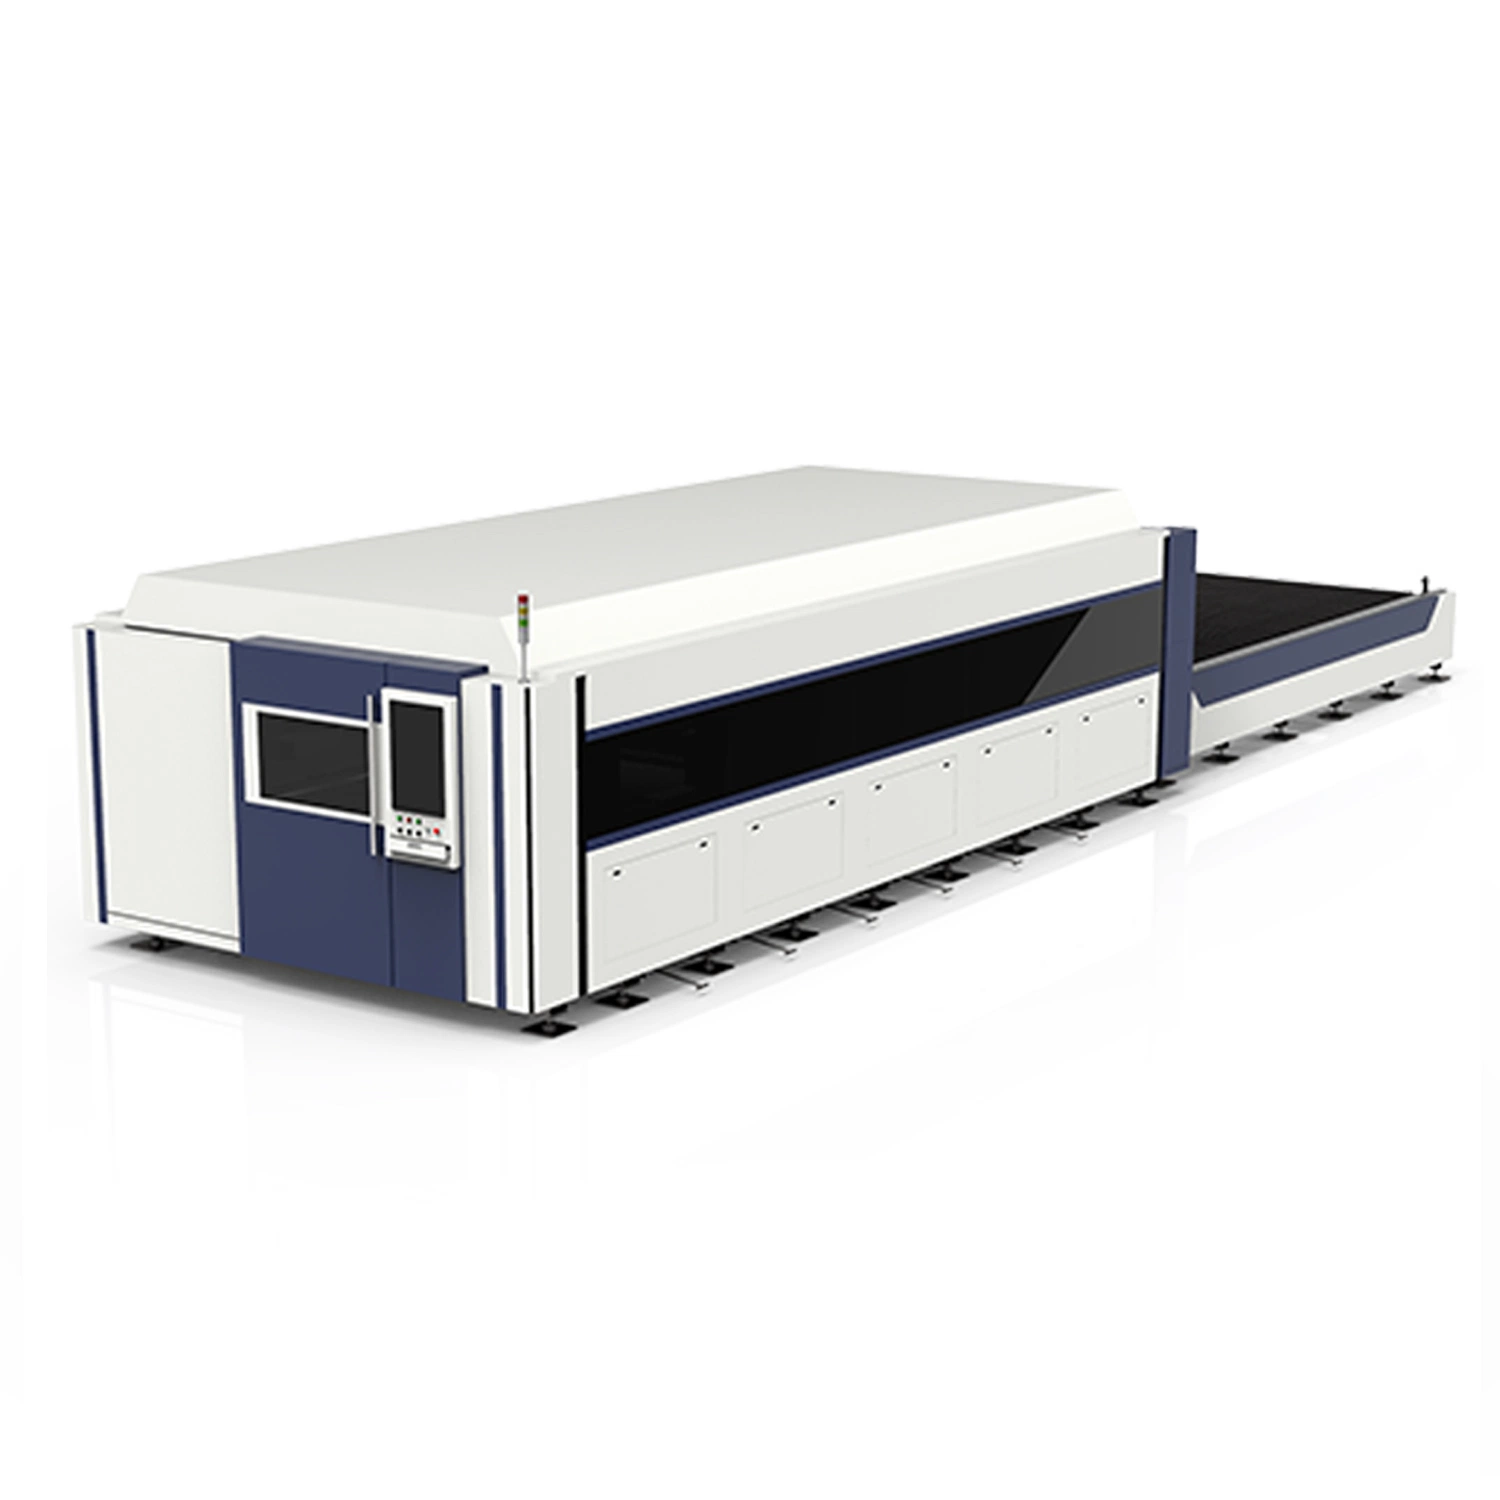 Shuttle кровать волокна машины лазерная резка таблица для Сталь Нержавеющая алюминий латунь медь